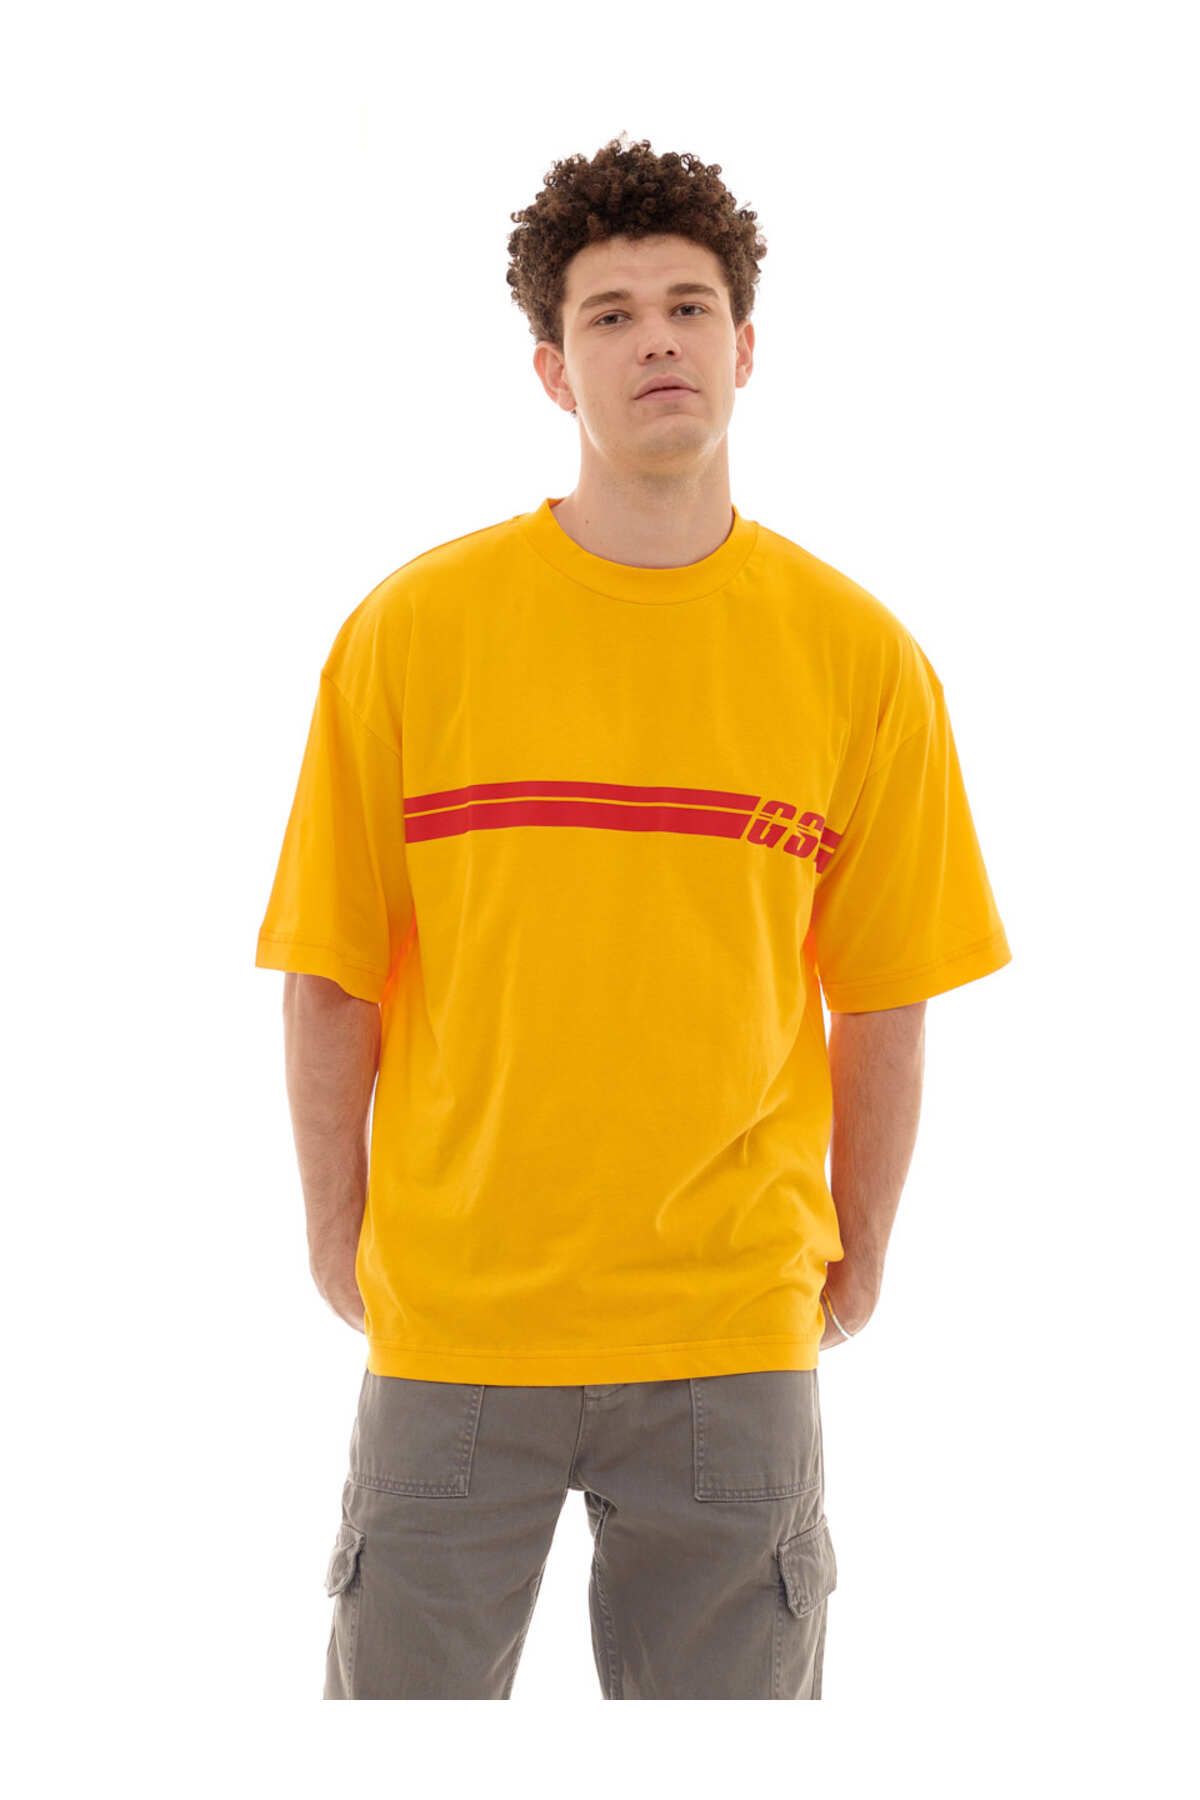 Galatasaray Ruck & Maul Erkek T-shirt 23068